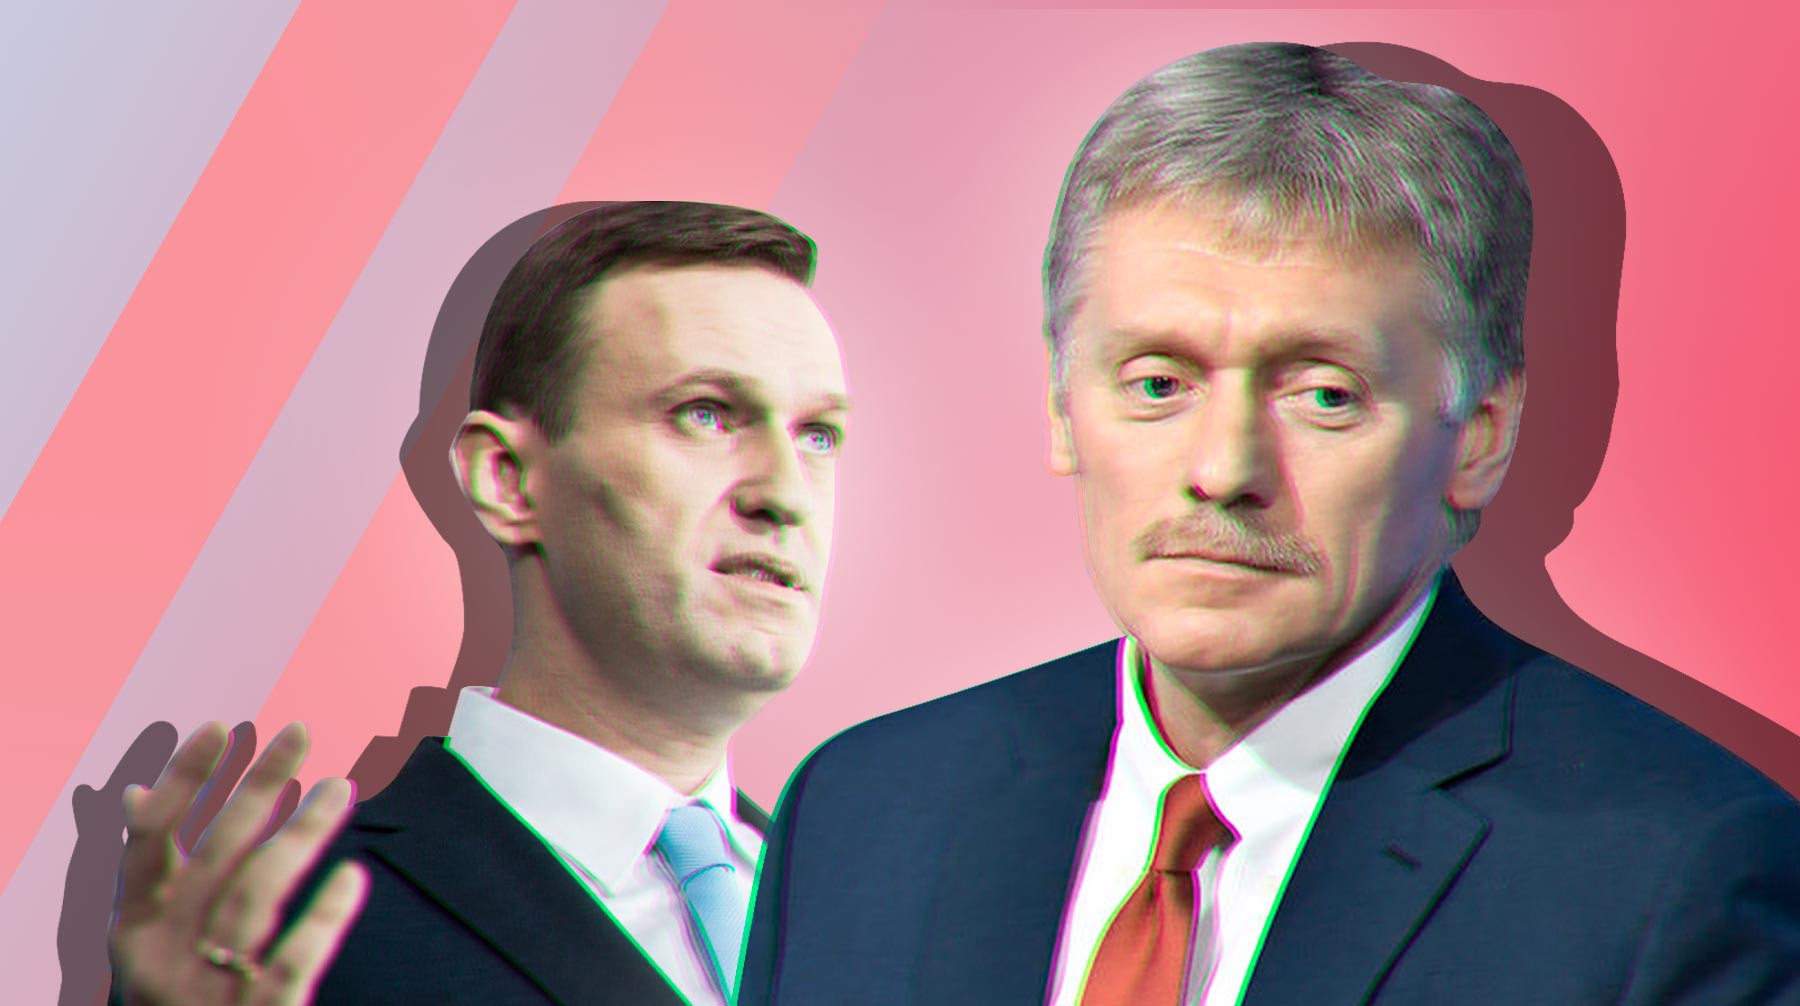 Dailystorm - Сравнения с Христом и зацикленность на «гульфиковой зоне»: Песков указал на манию величия Навального